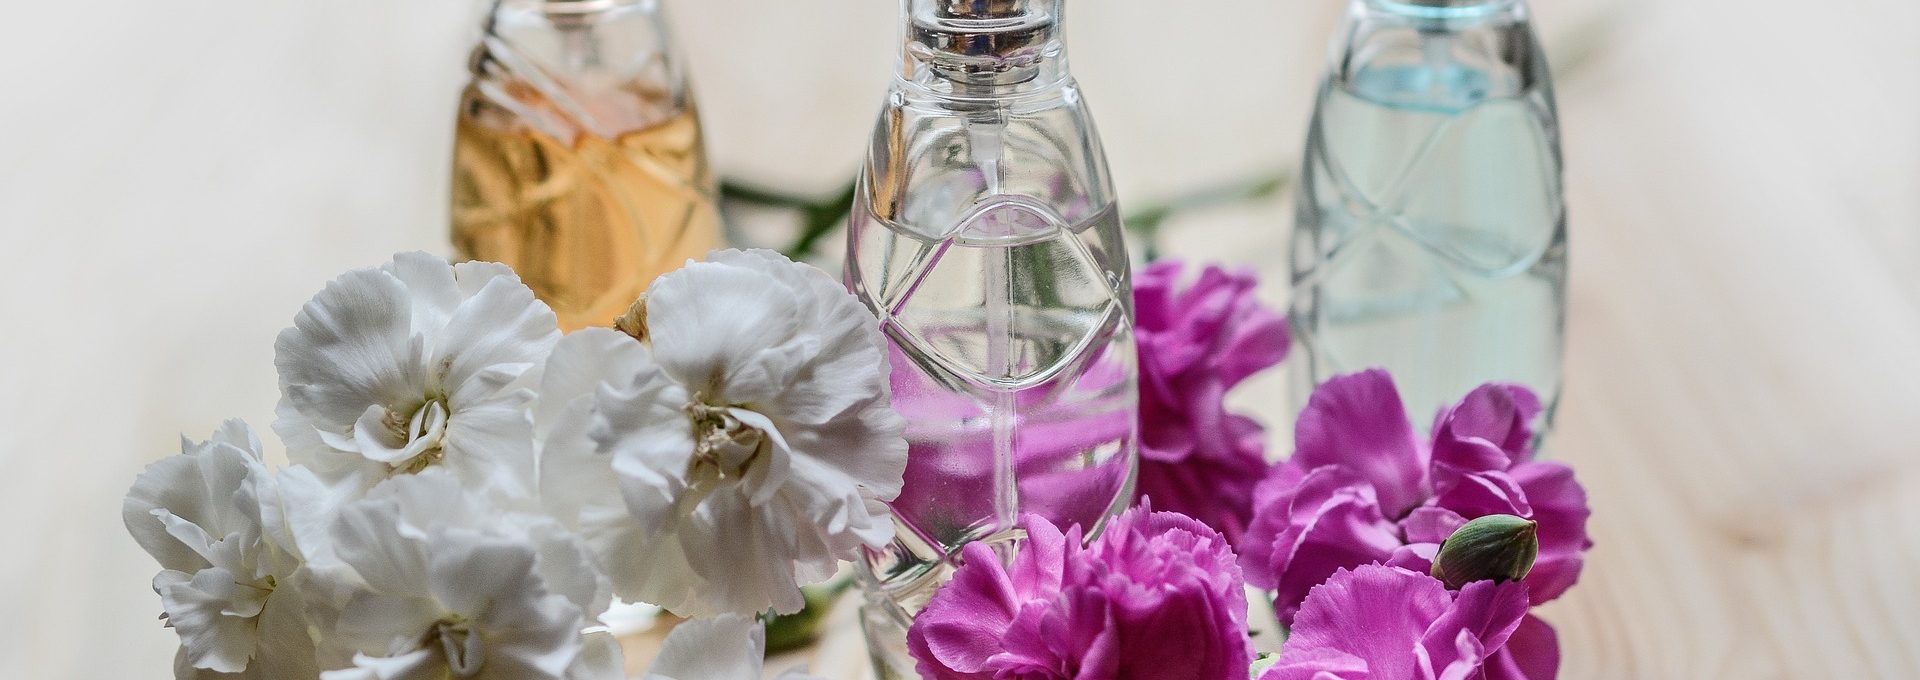 Três vidros de perfume com cachos de flores ao redor